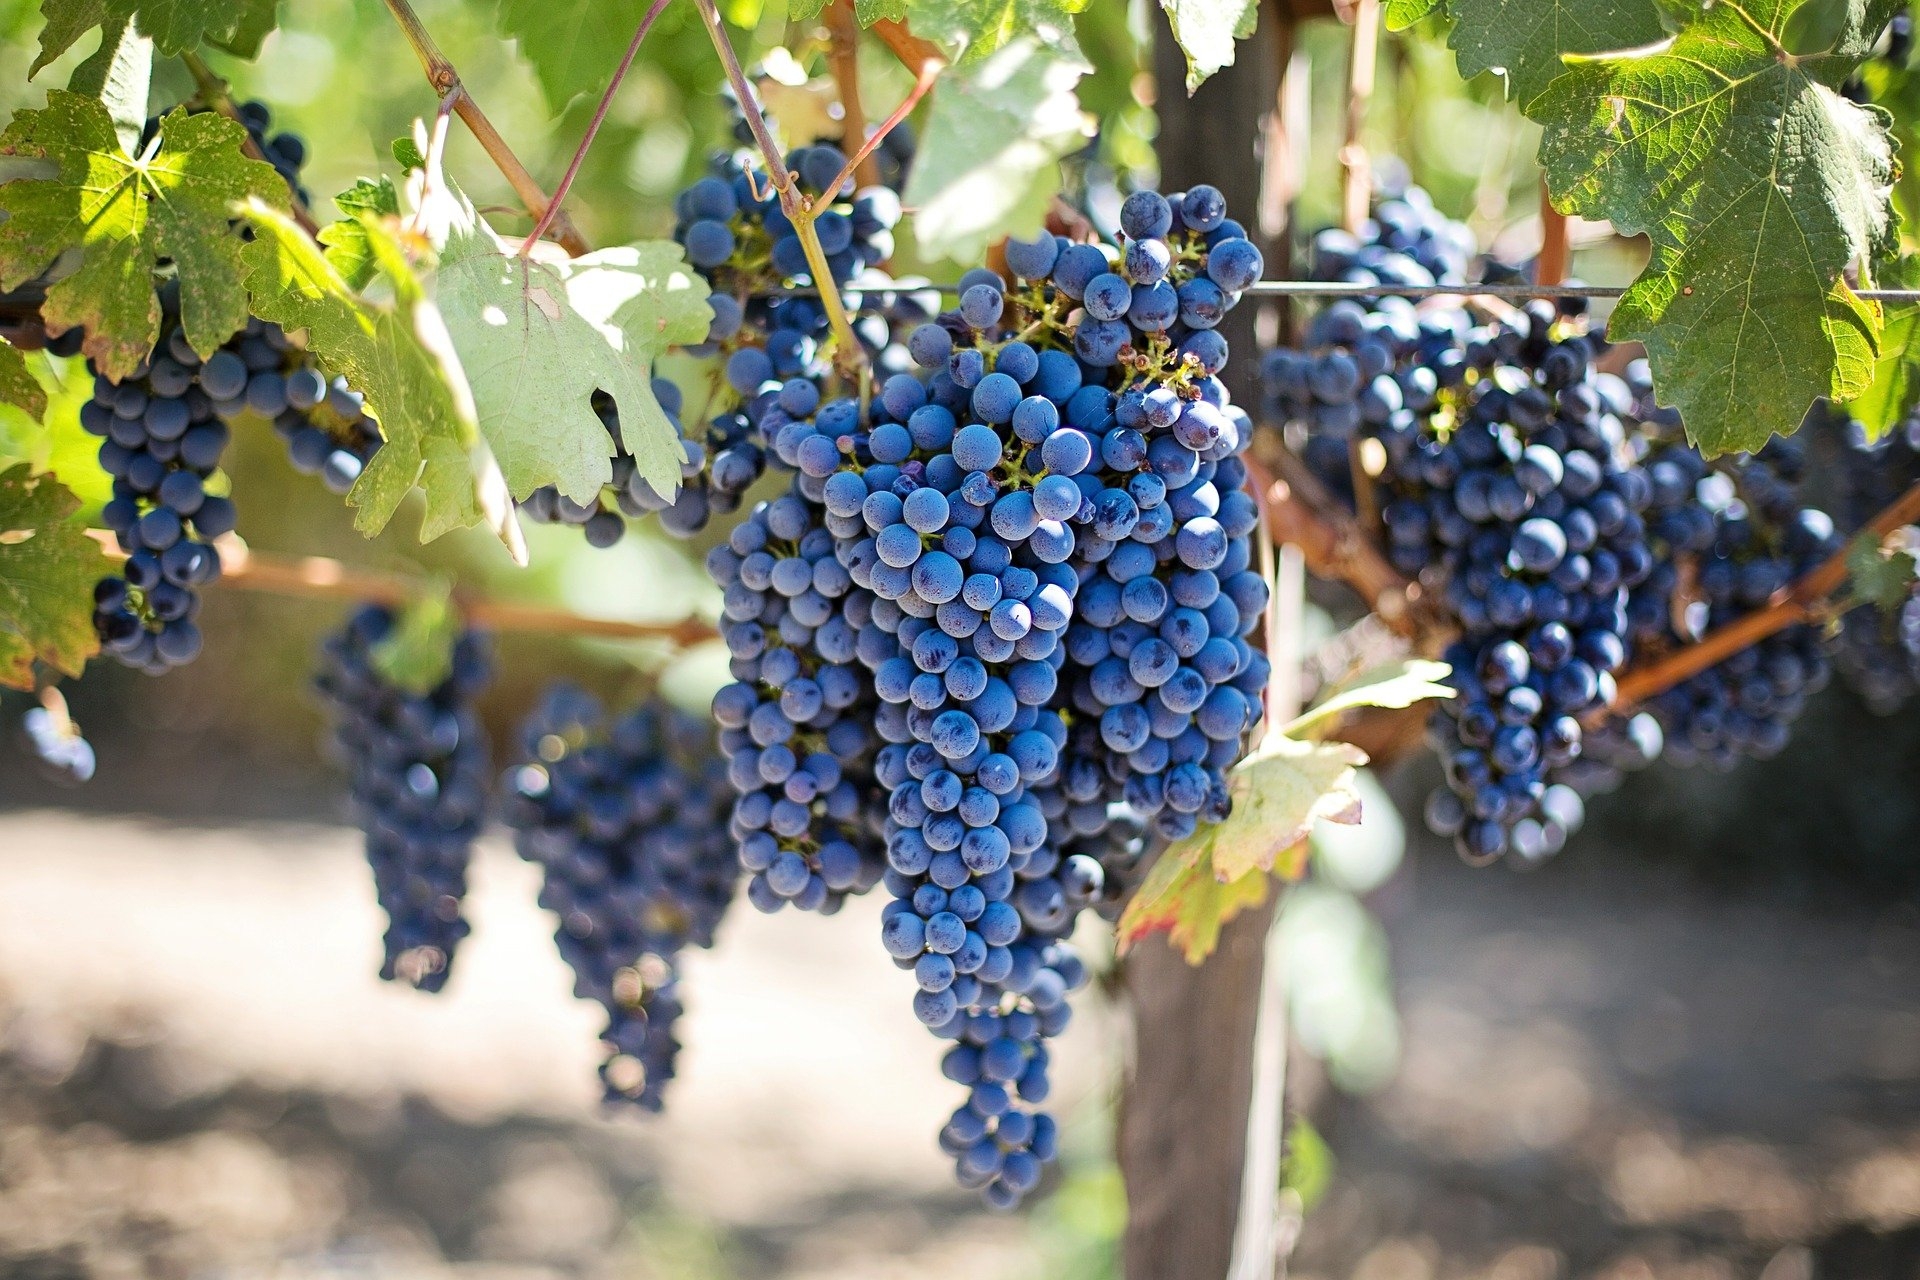 La filière viticole propose une stratégie d’innovation